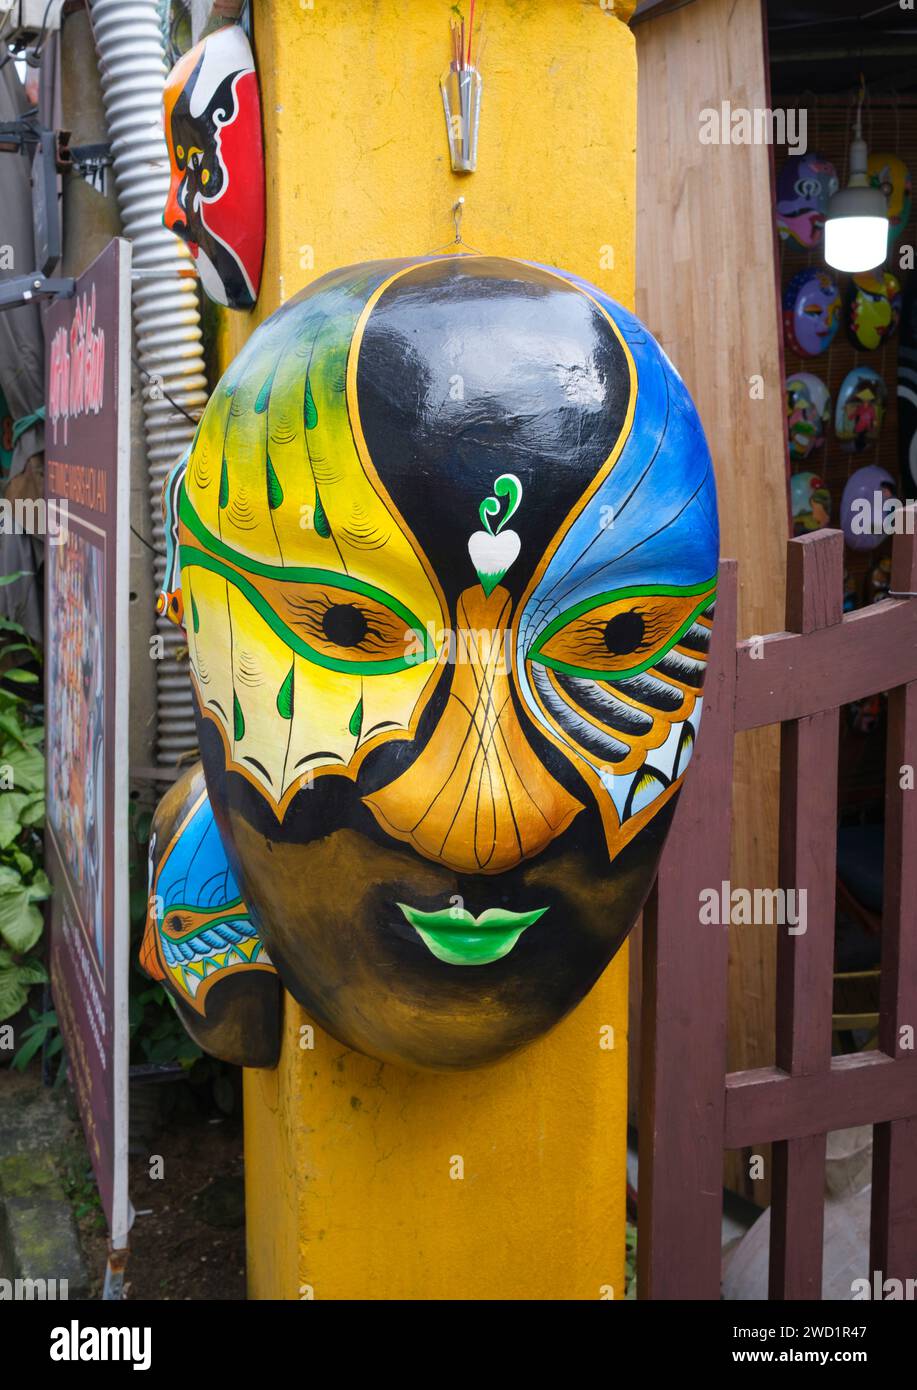 Vietnam: Eine farbenfrohe Maske auf dem vorderen Torpfosten der Timing Mask, einer Firma, die auf handgefertigte Masken spezialisiert ist, Le Loi, Altstadt, Hoi an. Die kleine, aber historische Stadt Hoi an liegt am Fluss Thu Bon 30 km südlich von Danang. Während der Zeit der Nguyen Lords (1558–1777) und sogar unter den ersten Nguyen-Kaisern war Hoi an – damals bekannt als Faifo – ein wichtiger Hafen, der regelmäßig von Schiffen aus Europa und dem ganzen Osten besucht wurde. Stockfoto